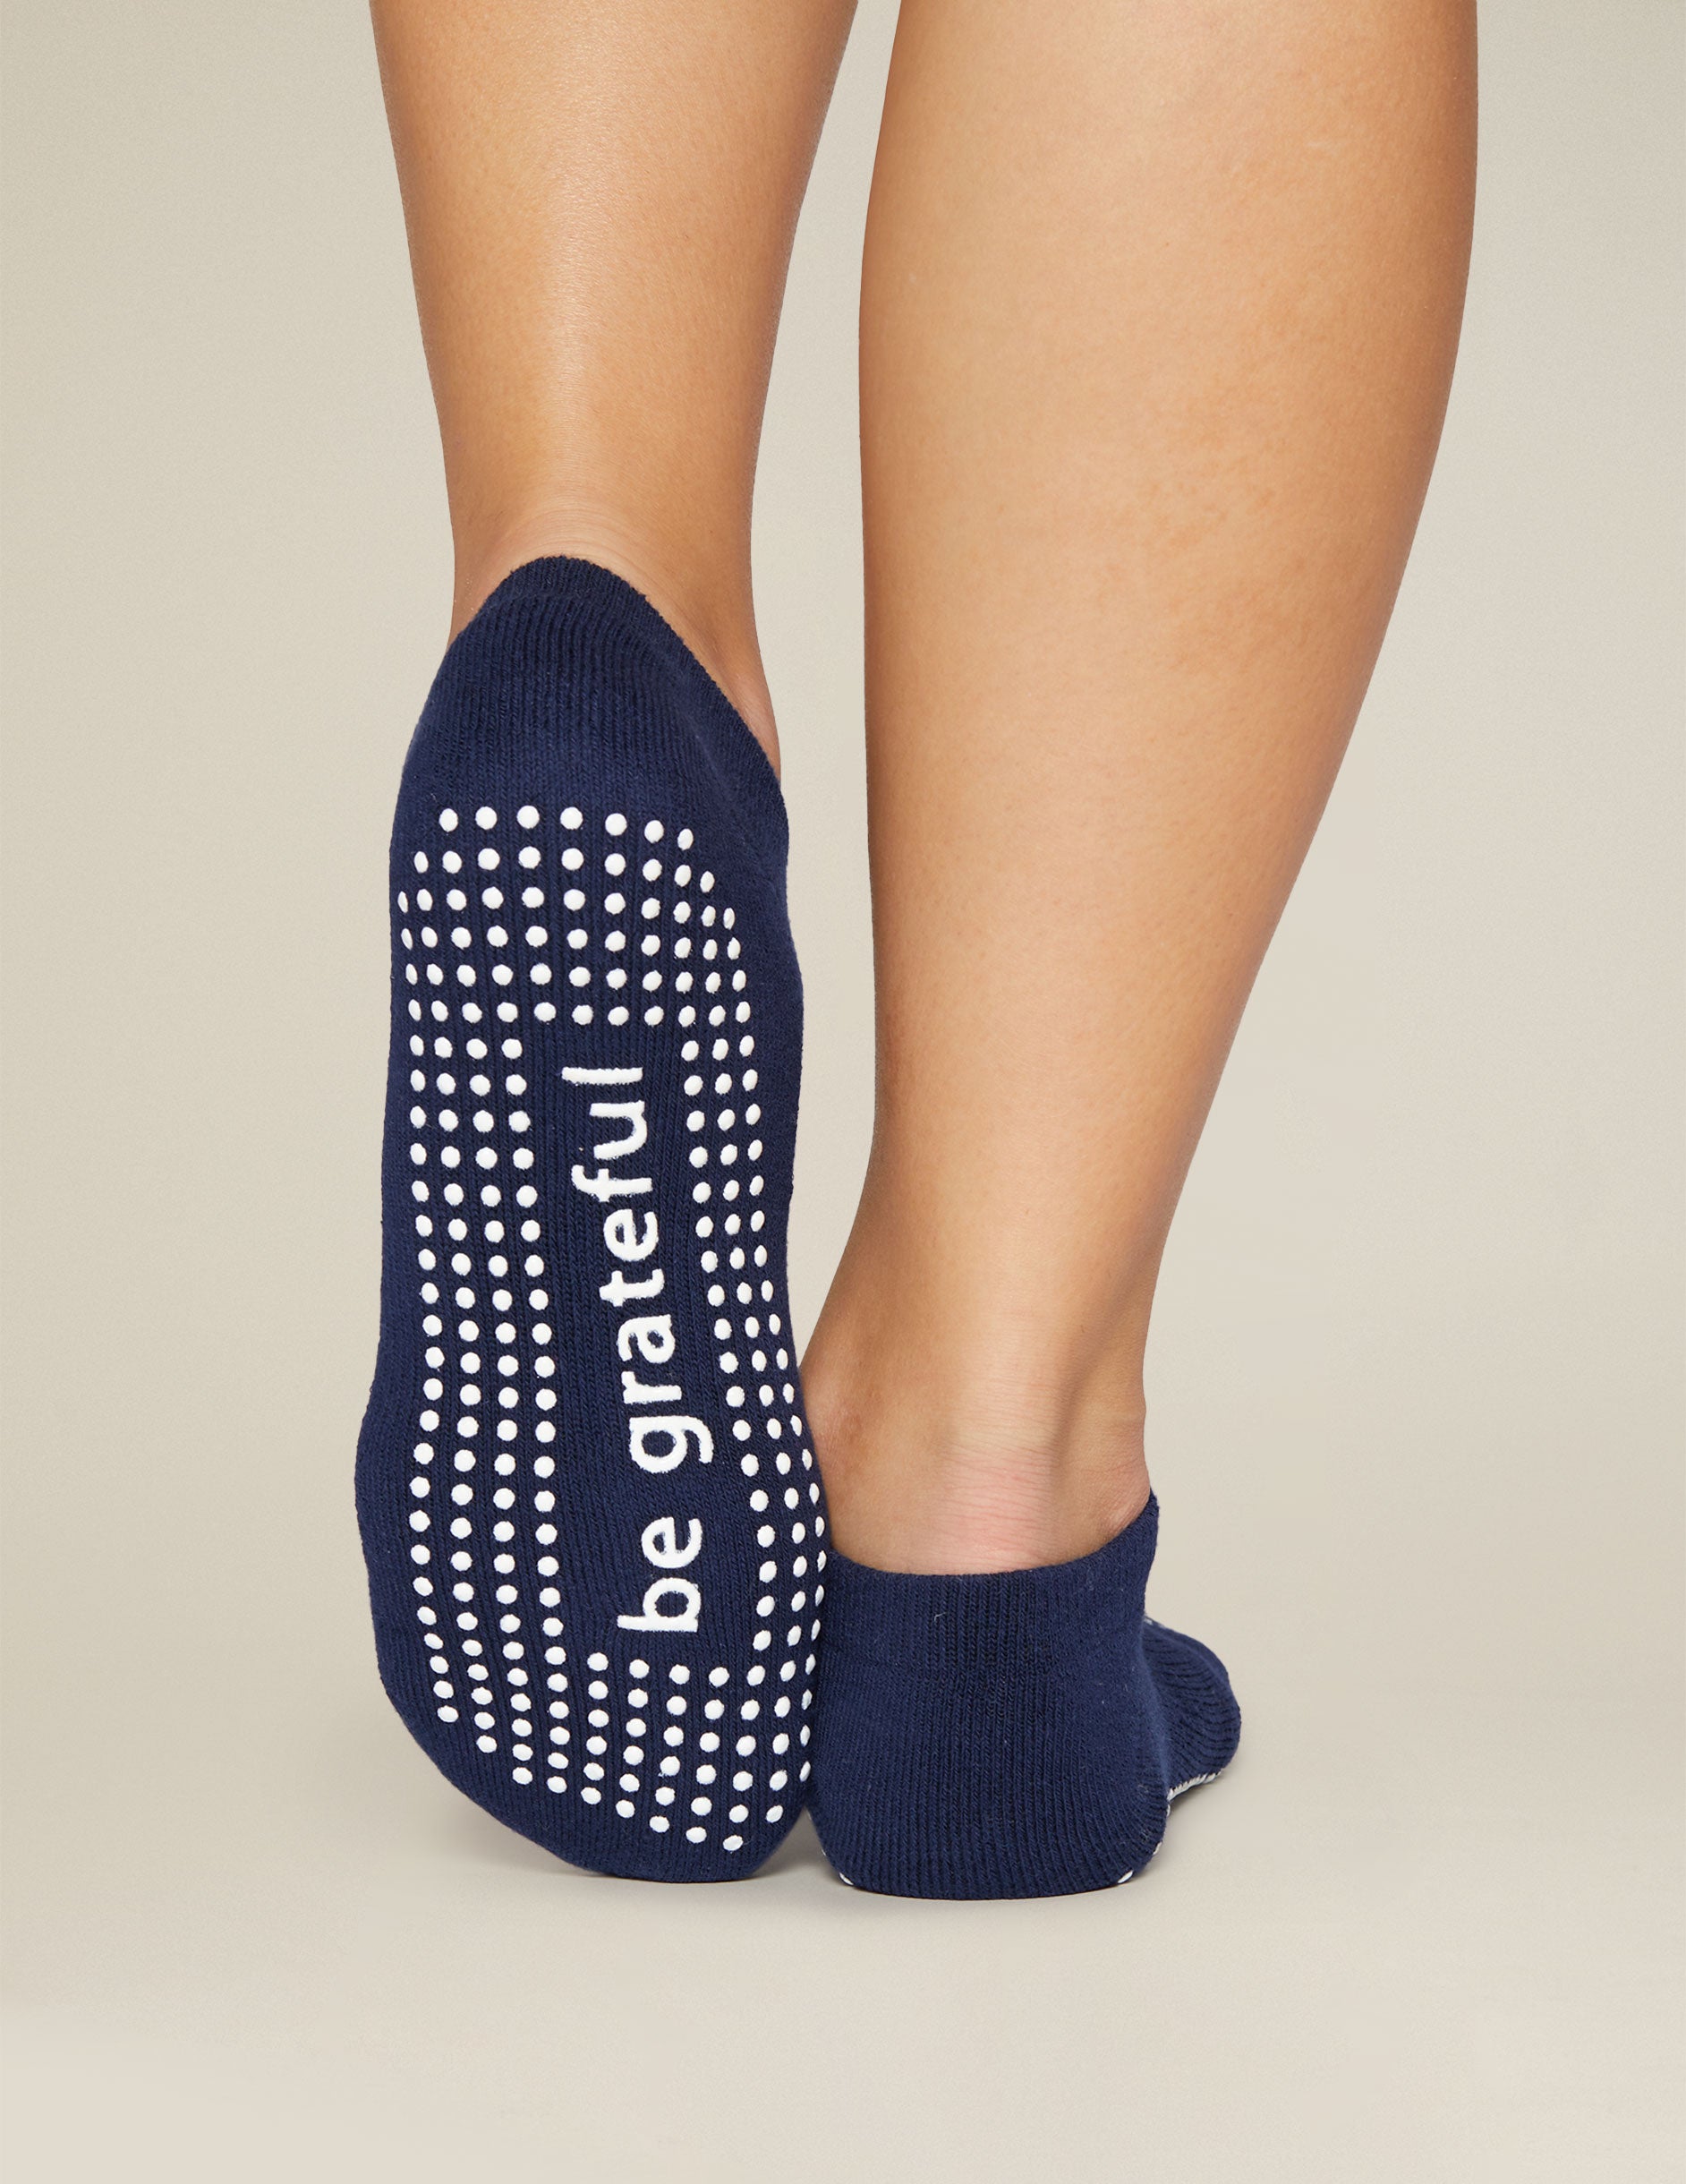 Yoga Socks - Toeless Grippy Non Slip Sticky Grip Accessories for Women & Men